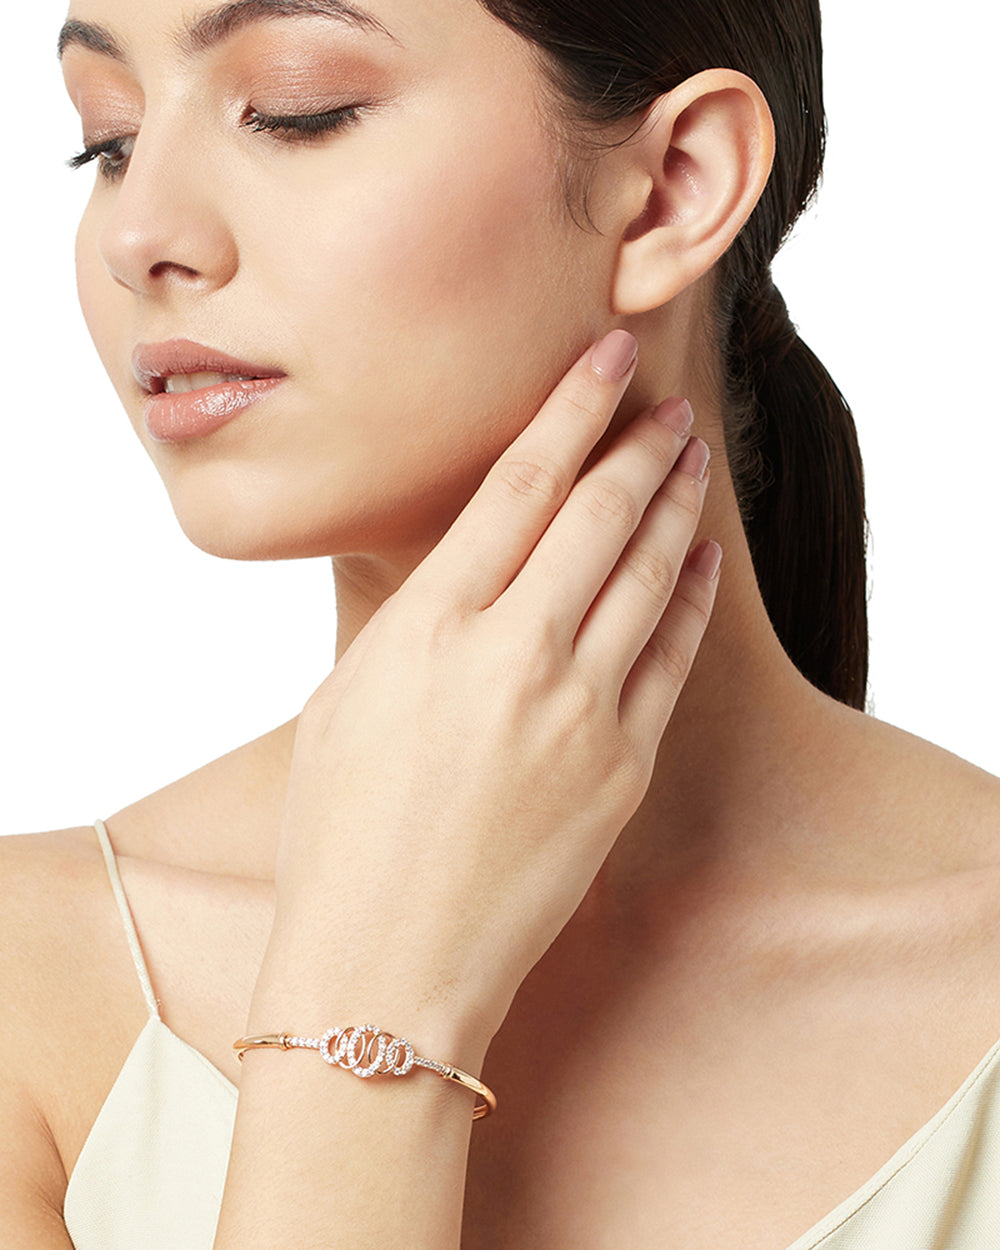 Women's Crown Design Rose Gold Bracelet With Gemstones - Voylla